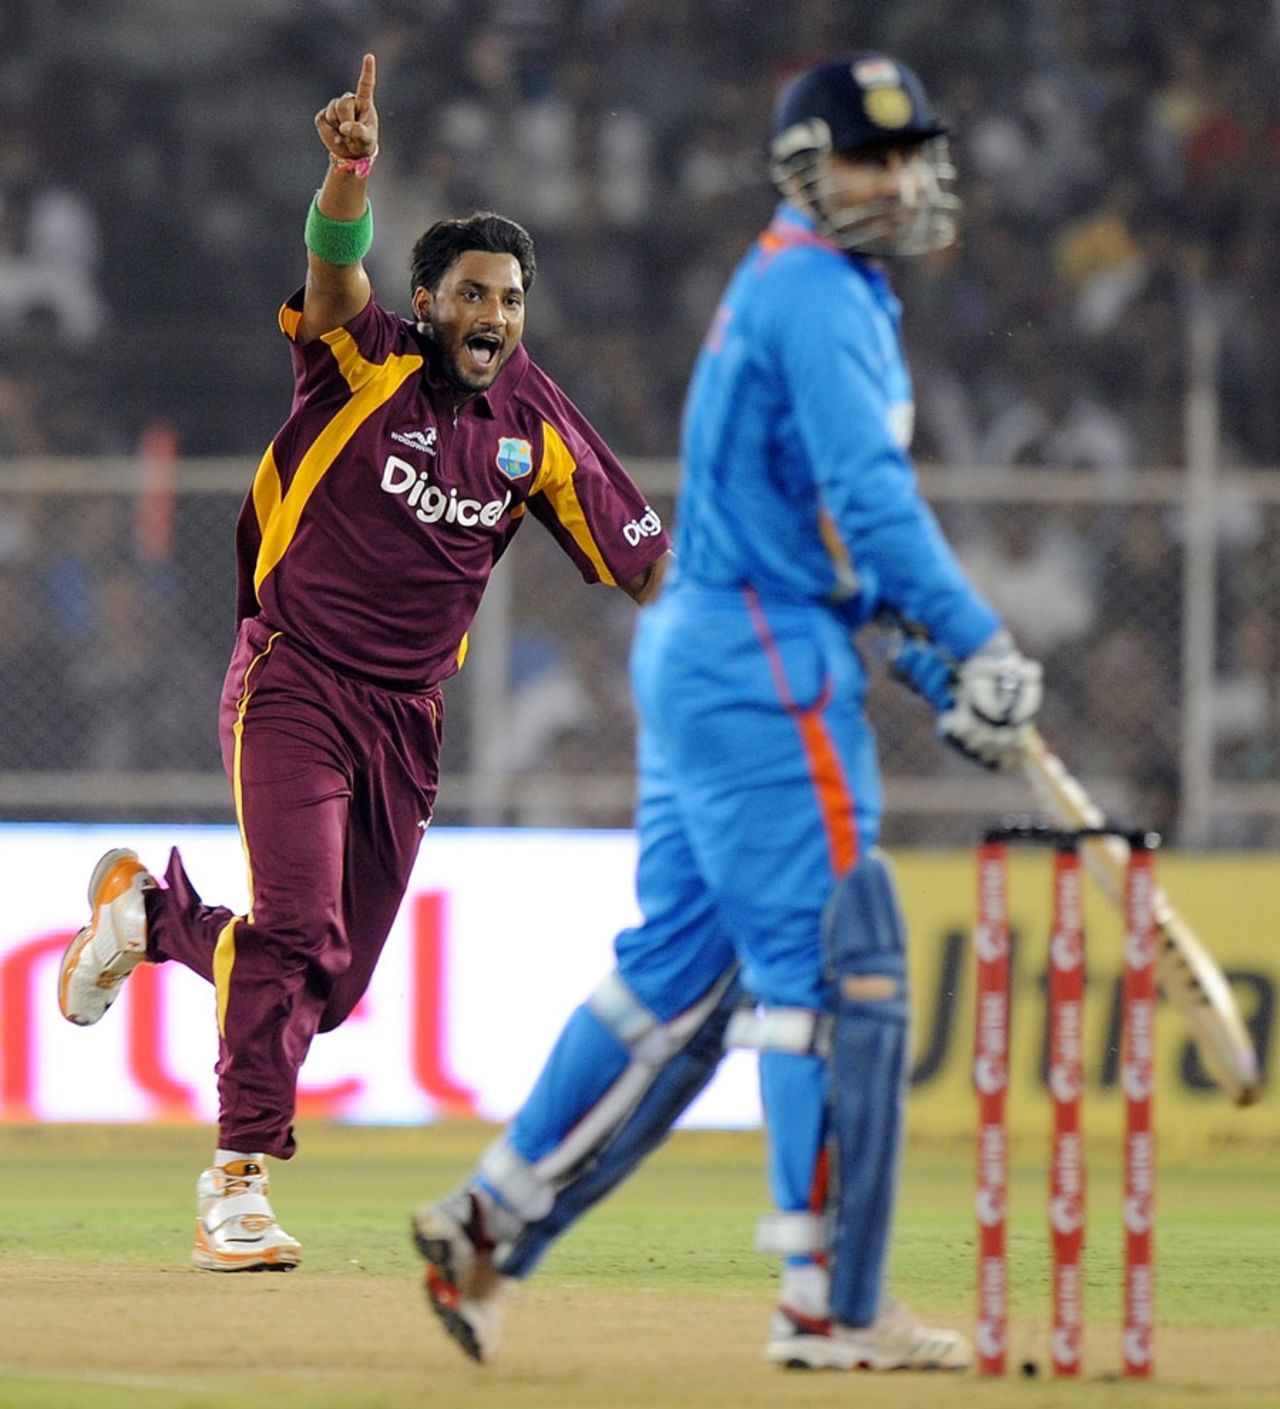 Ravi Rampaul has Virender Sehwag caught behind, India v West Indies, 3rd ODI, Ahmedabad, December 5, 2011